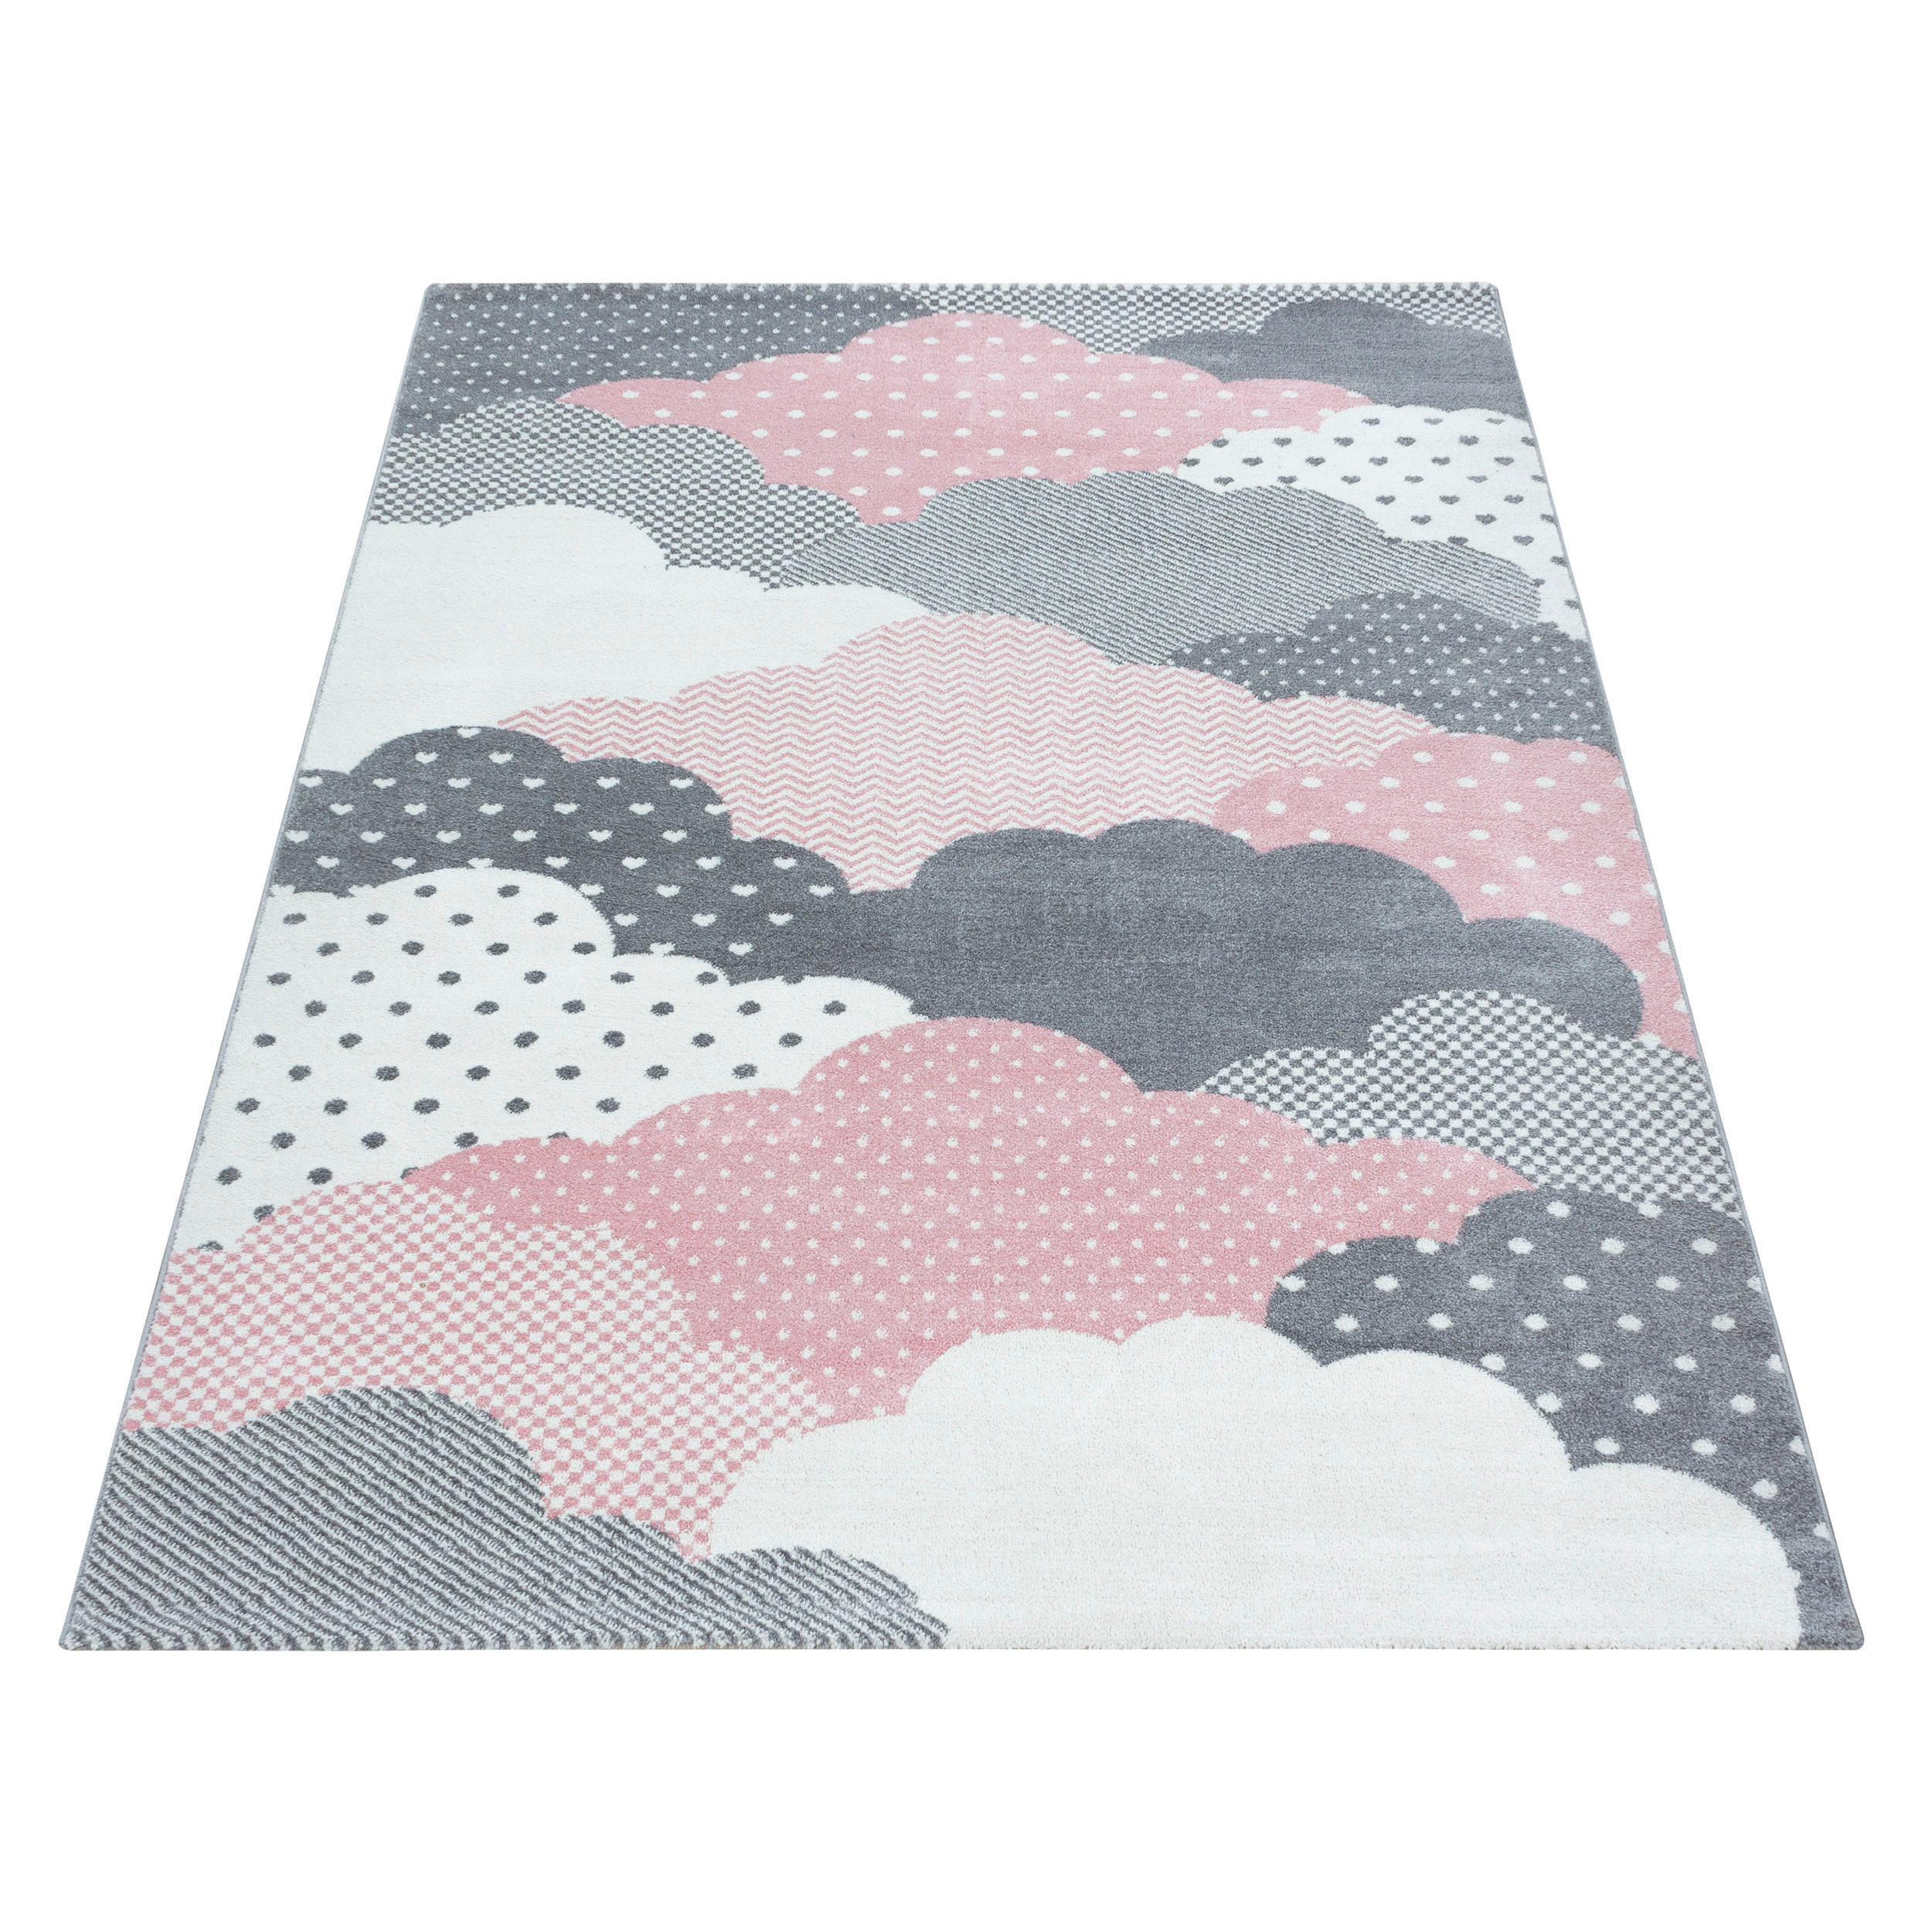 Ben′n′jen DĚTSKÝ KOBEREC, 160/230 cm, pink - pink - textil